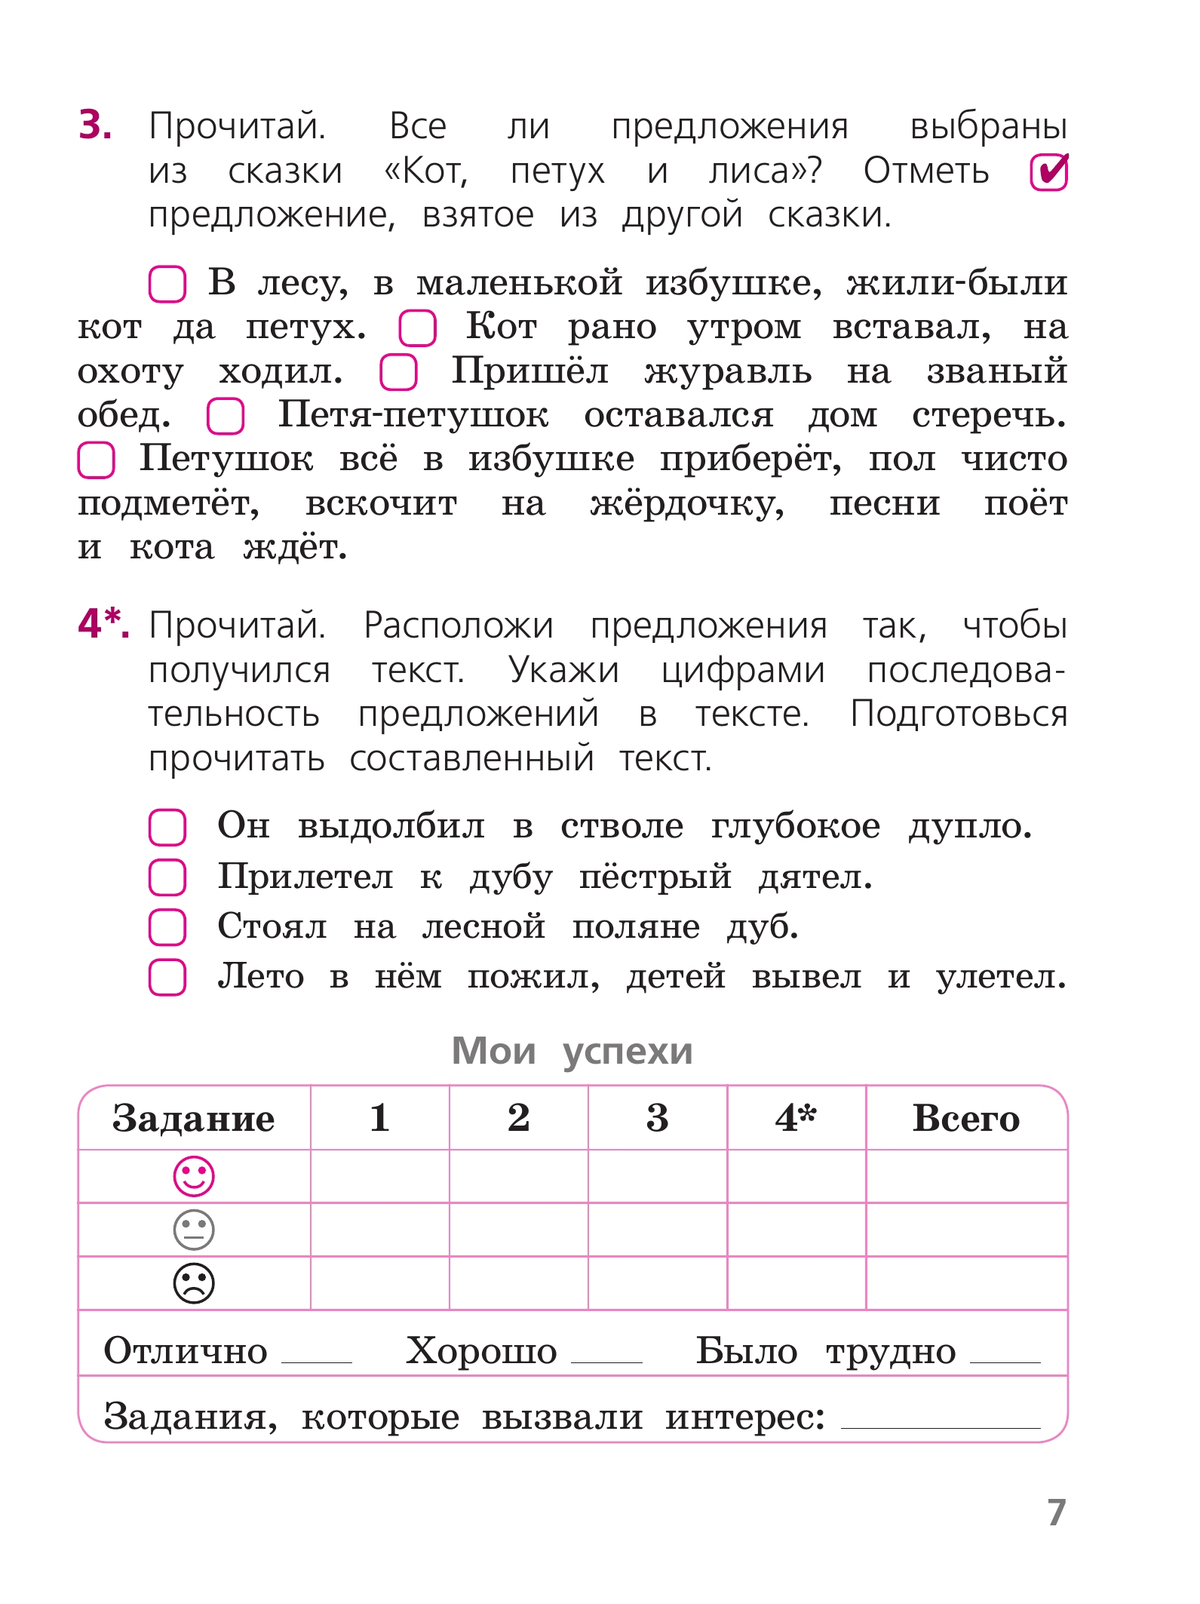 Русский язык. Тетрадь учебных достижений. 1 класс 7